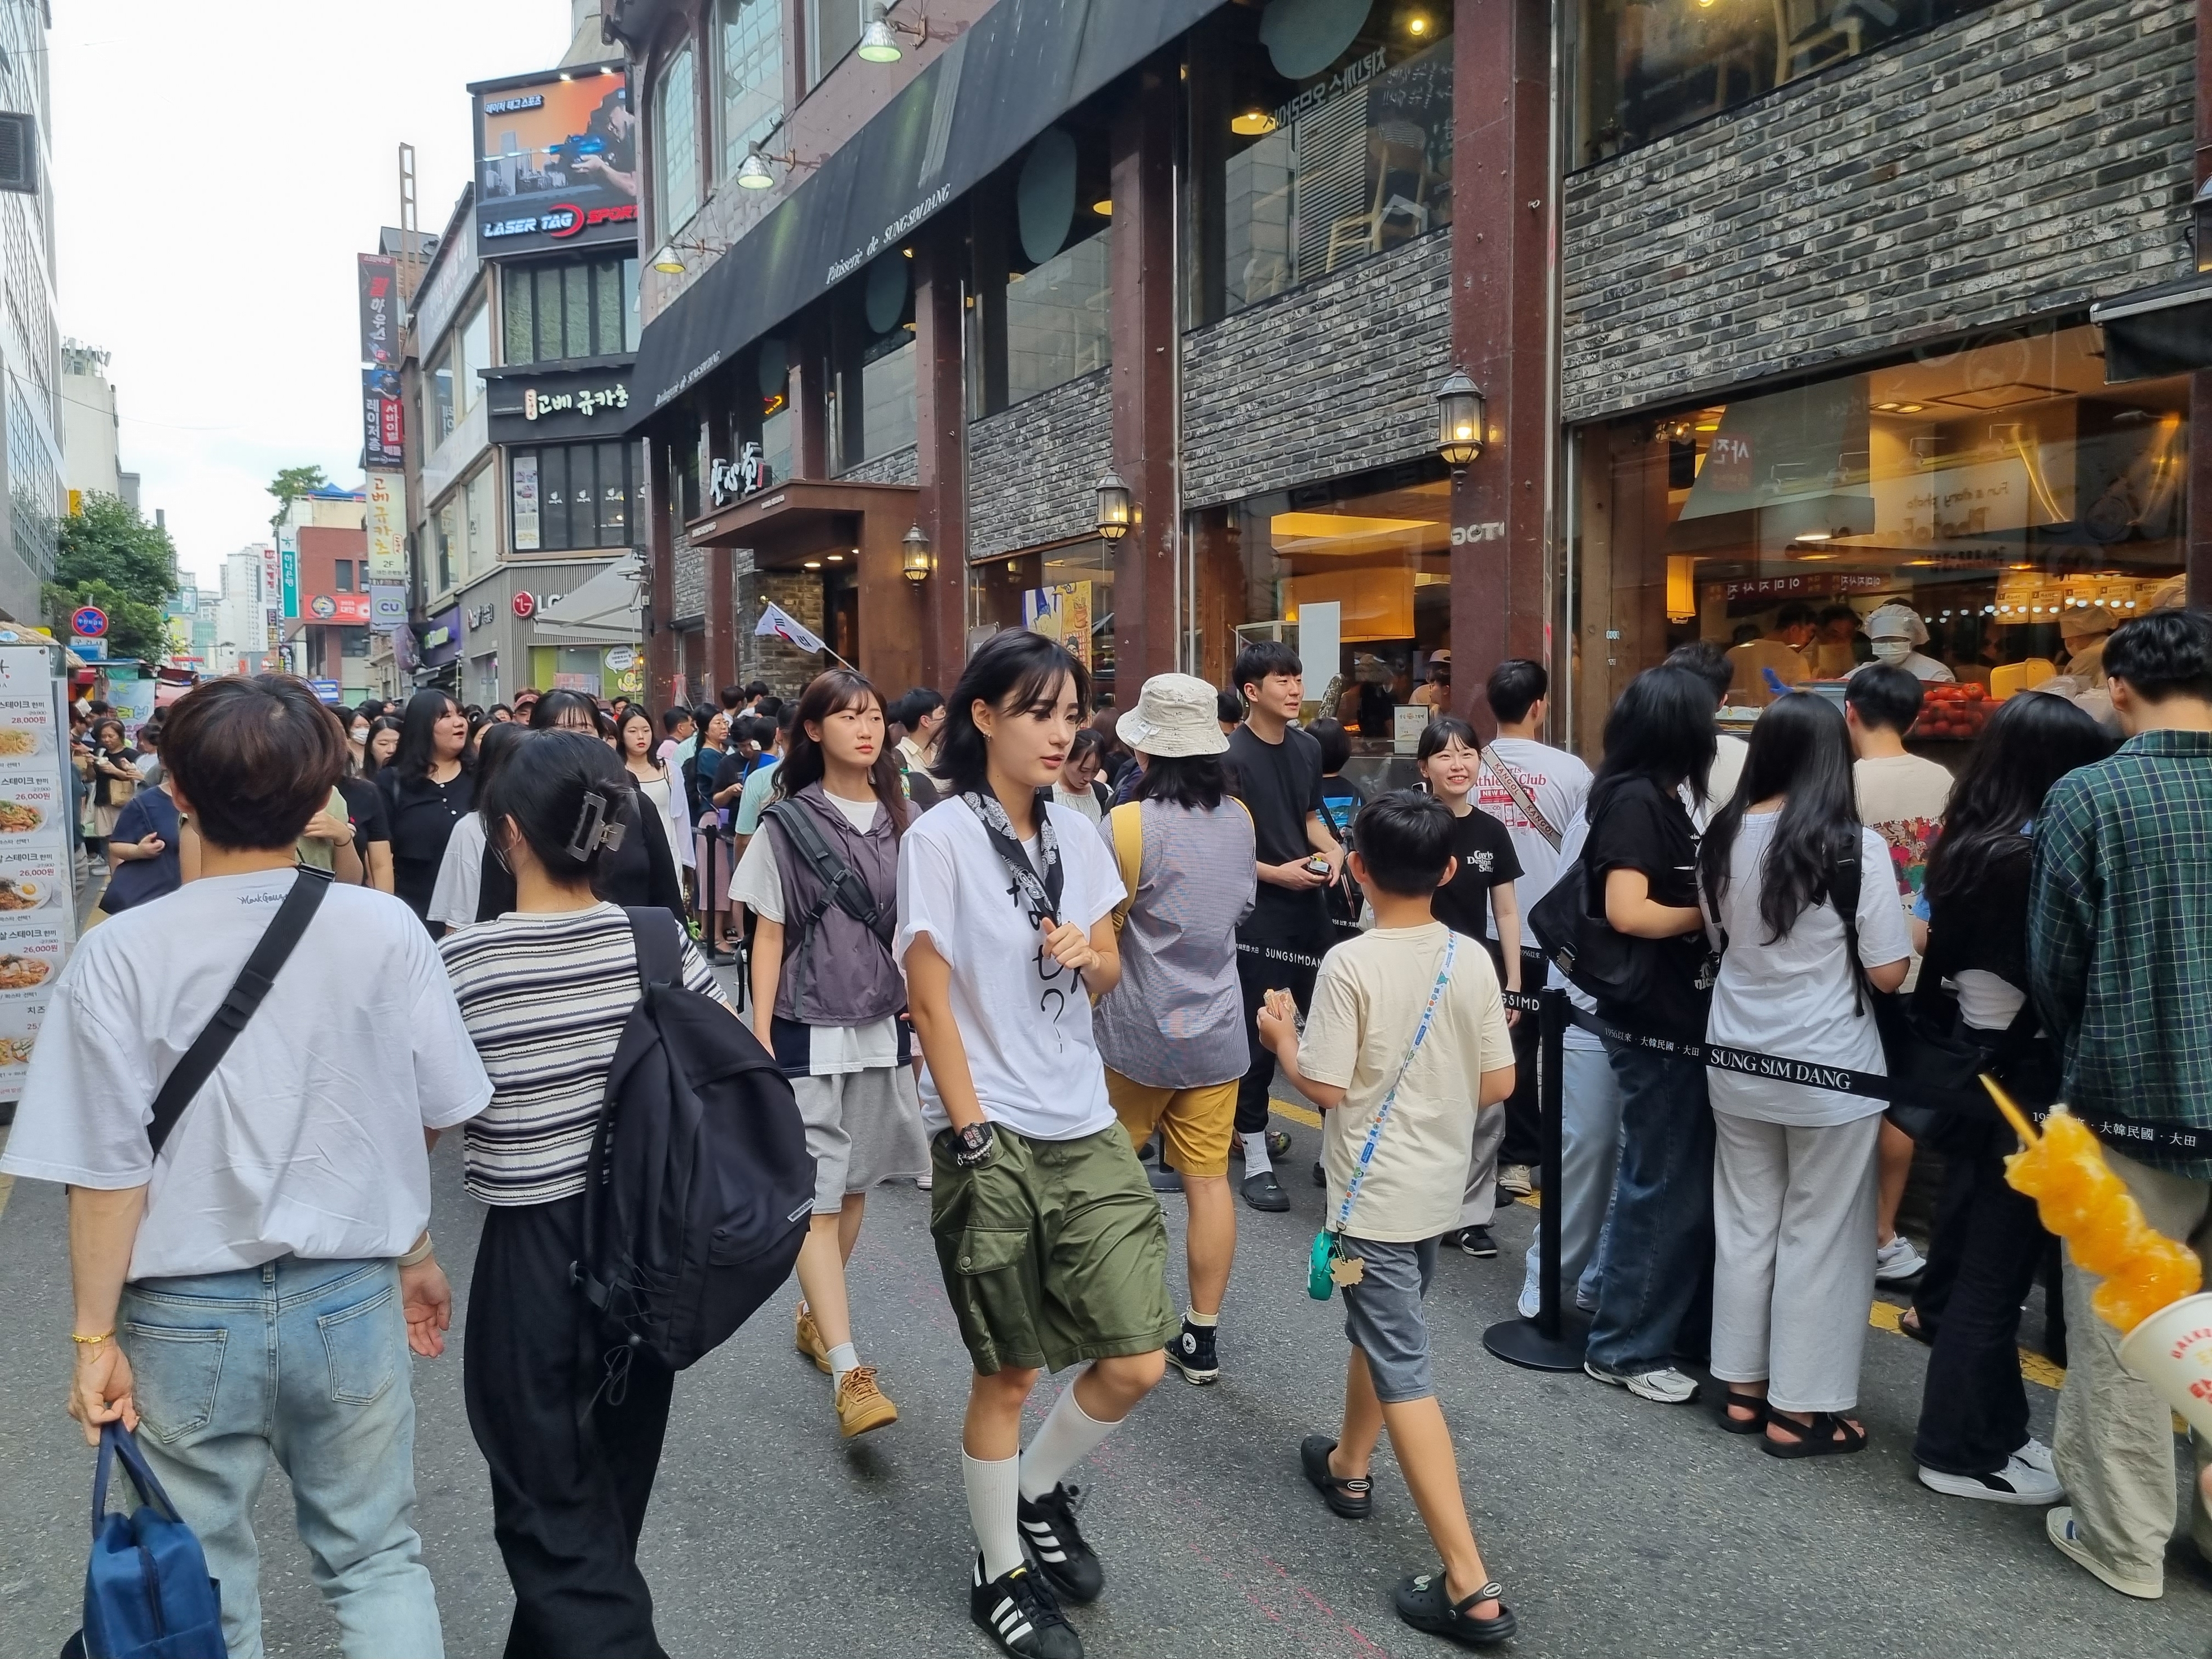 대전역에서 1㎞쯤 떨어진 성심당 본점 앞에 사람들이 줄지어 서 있다.